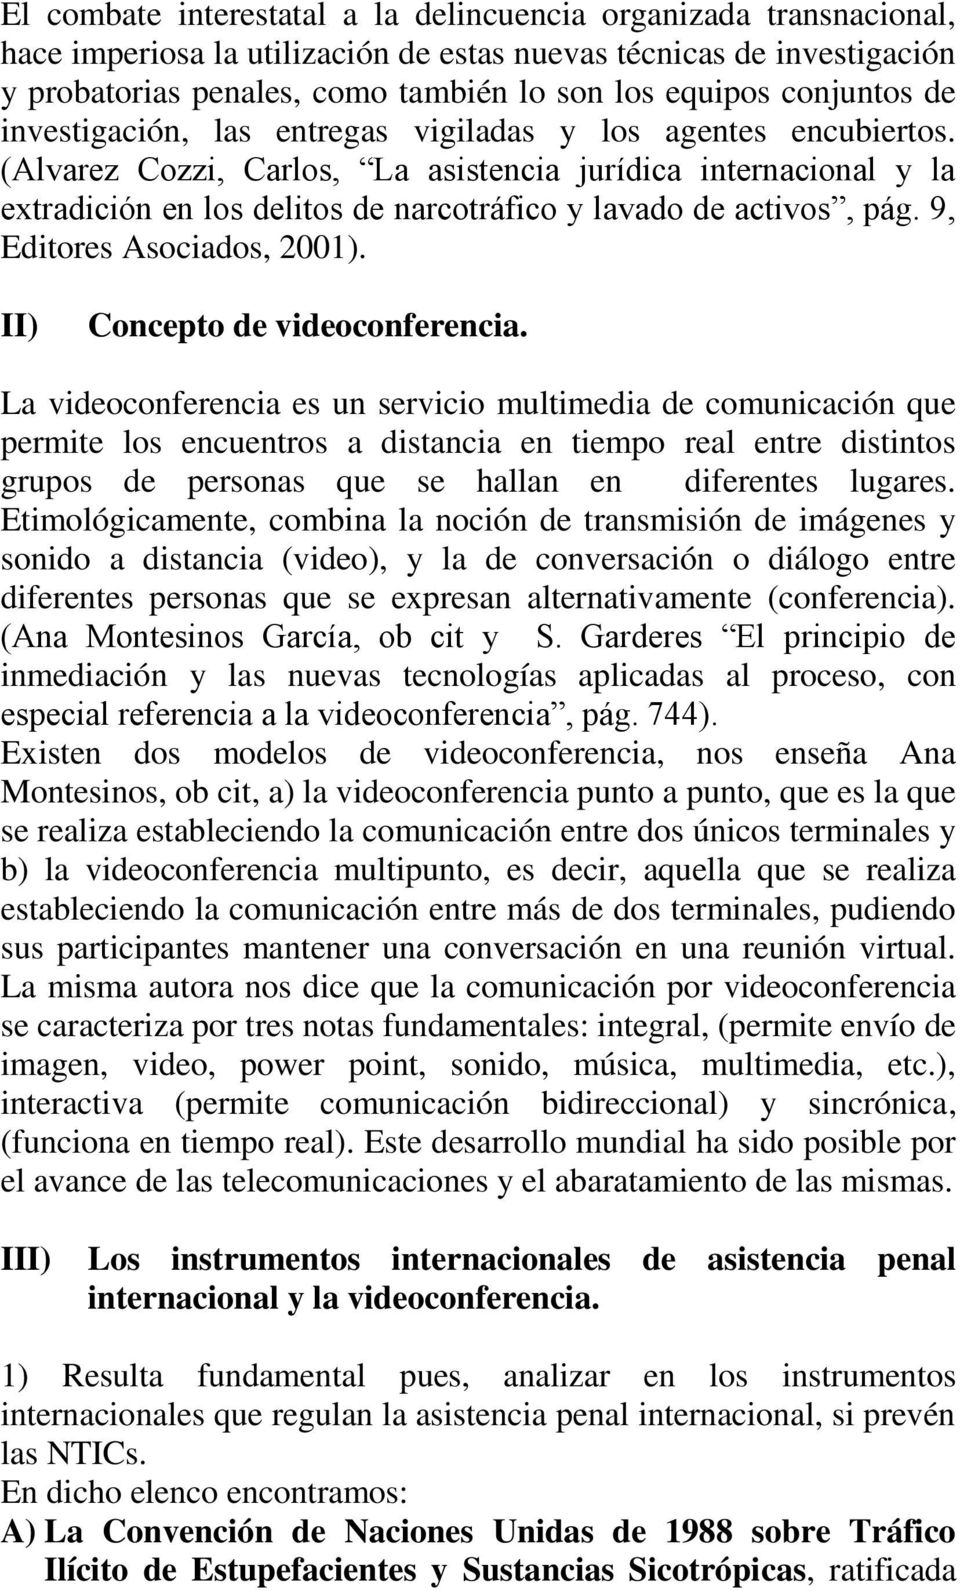 (Alvarez Cozzi, Carlos, La asistencia jurídica internacional y la extradición en los delitos de narcotráfico y lavado de activos, pág. 9, Editores Asociados, 2001). II) Concepto de videoconferencia.